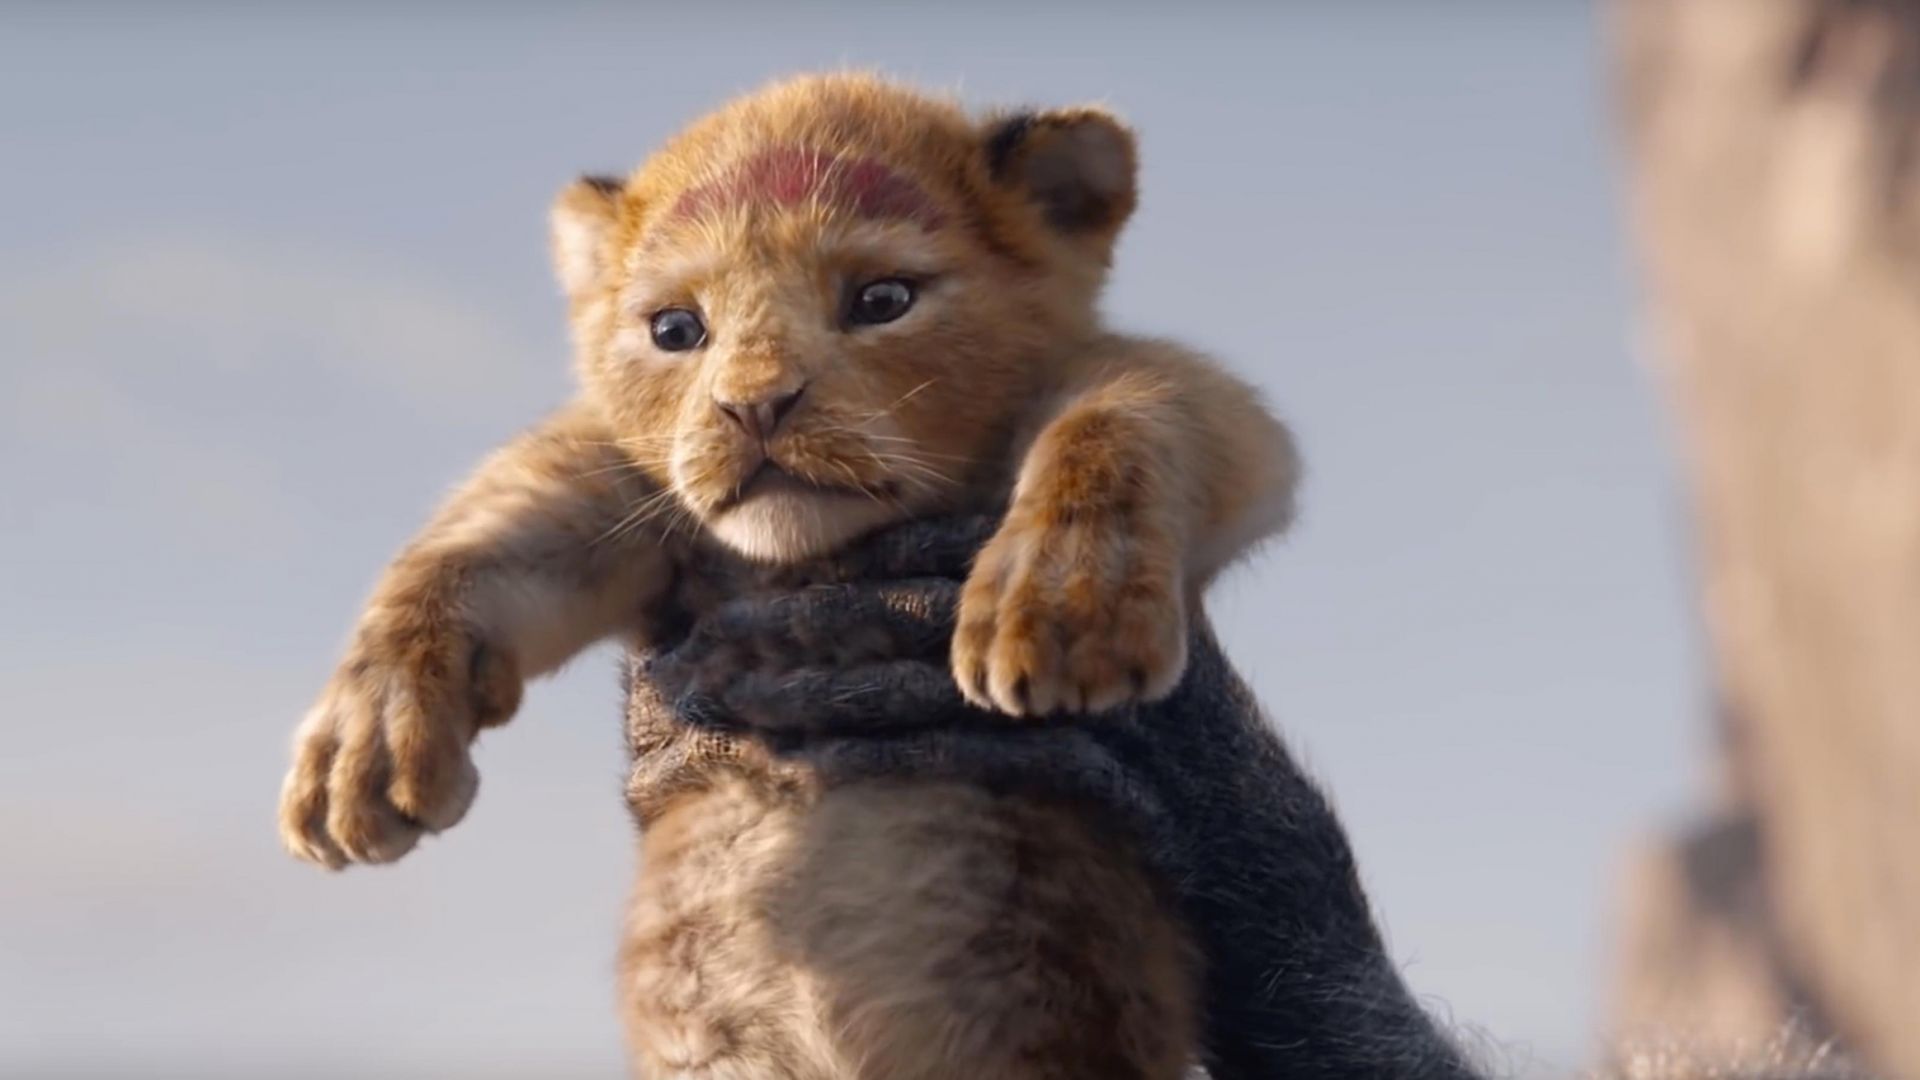 The Lion King, Hd - Lion King 2019 - HD Wallpaper 